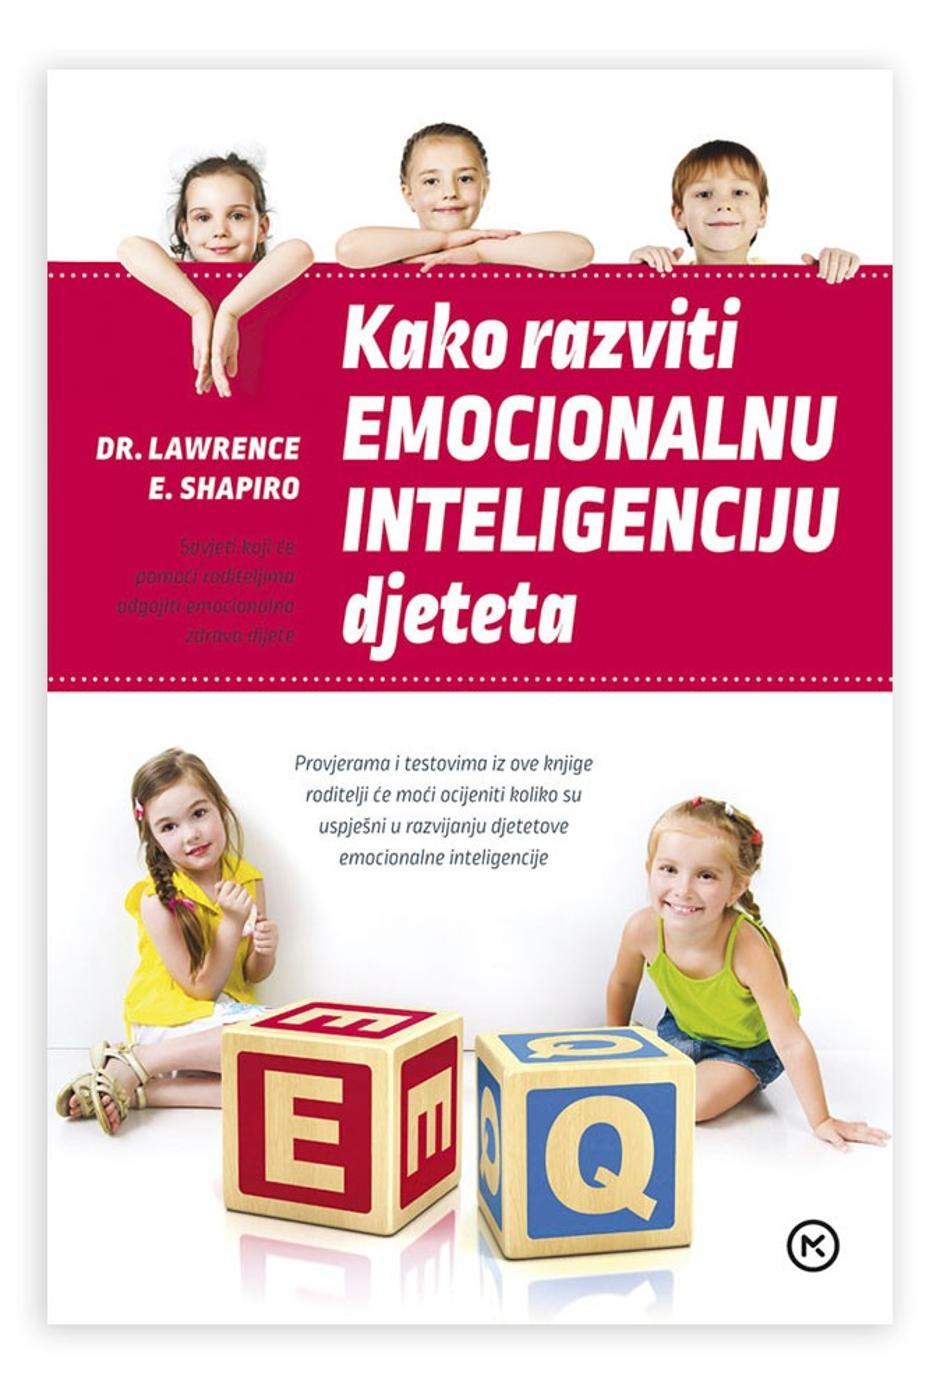 eq knjiga shapiro emocionalna inteligencija | Author: Promo